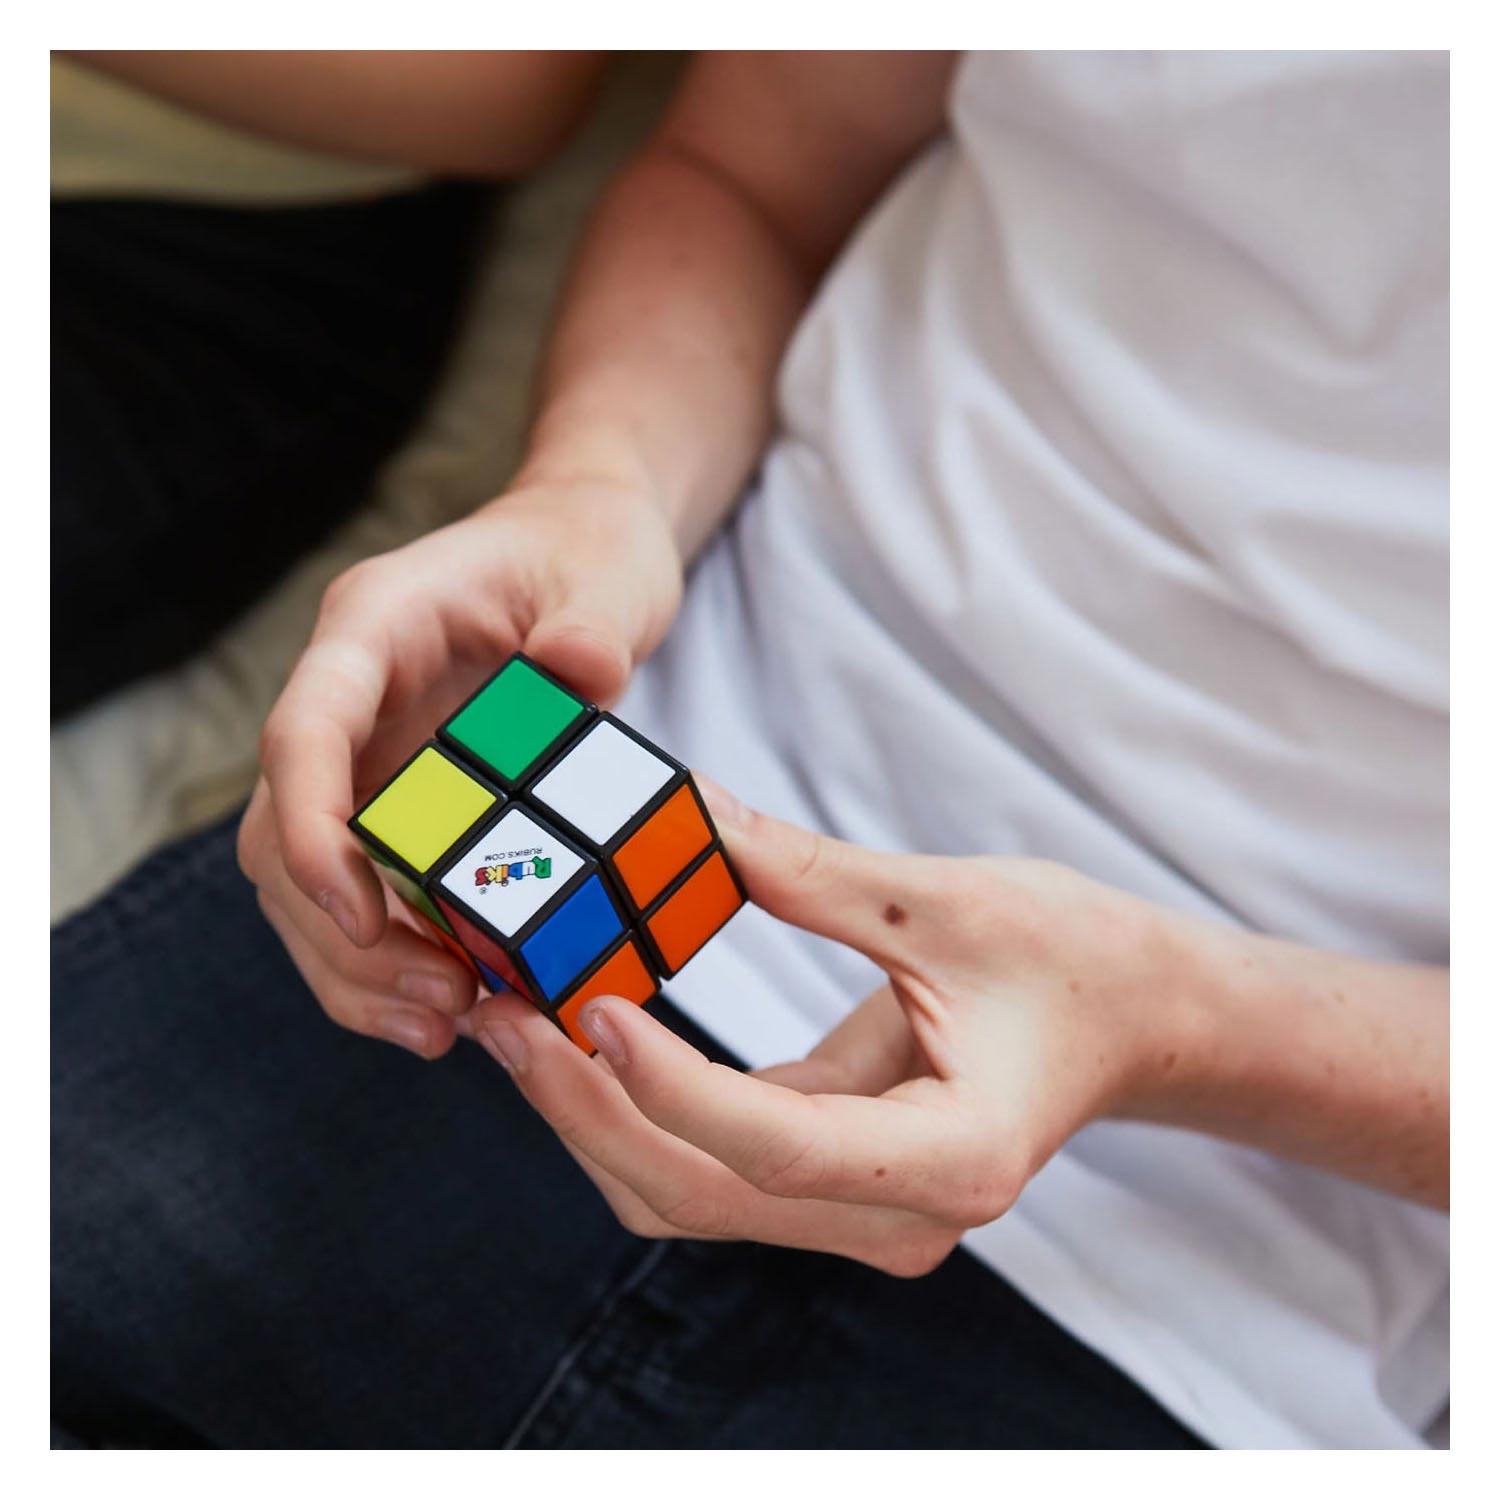 Rubik's Cube, 2 pièces. (3x3, 2x2) Casse-tête cérébral